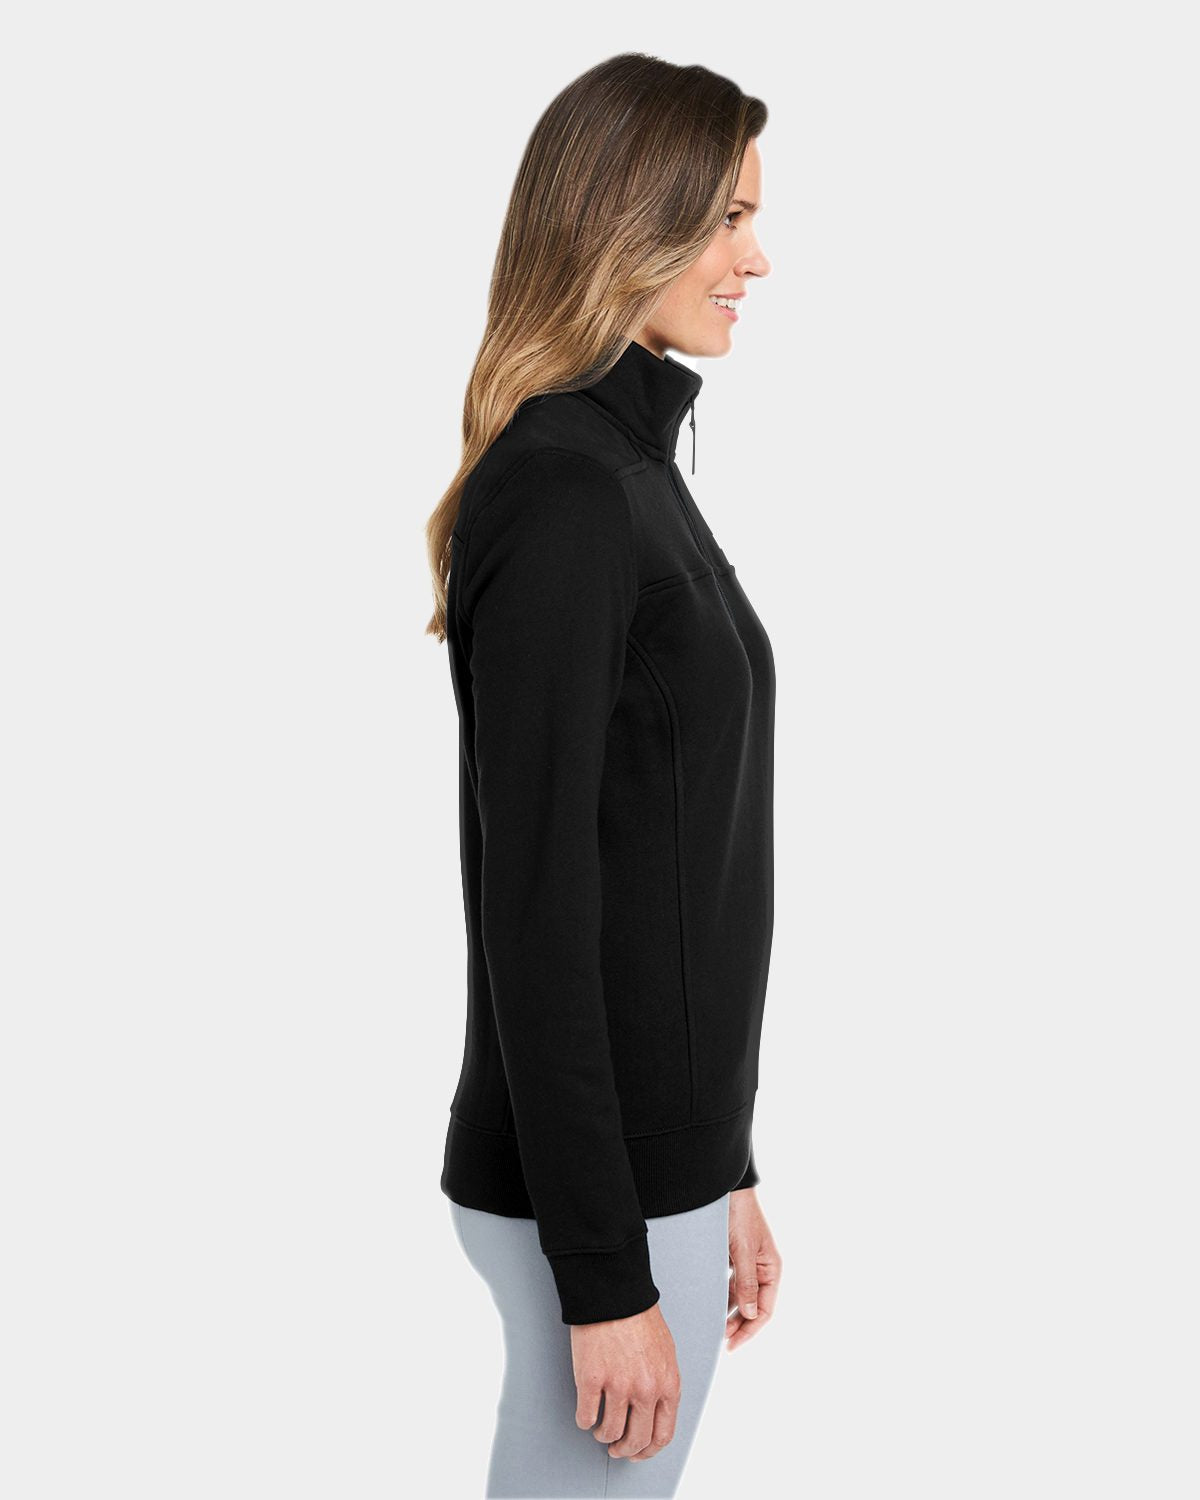 Vineyard Vines Custom Ladies Collegiate Shep Shirt K002795 Jet Black